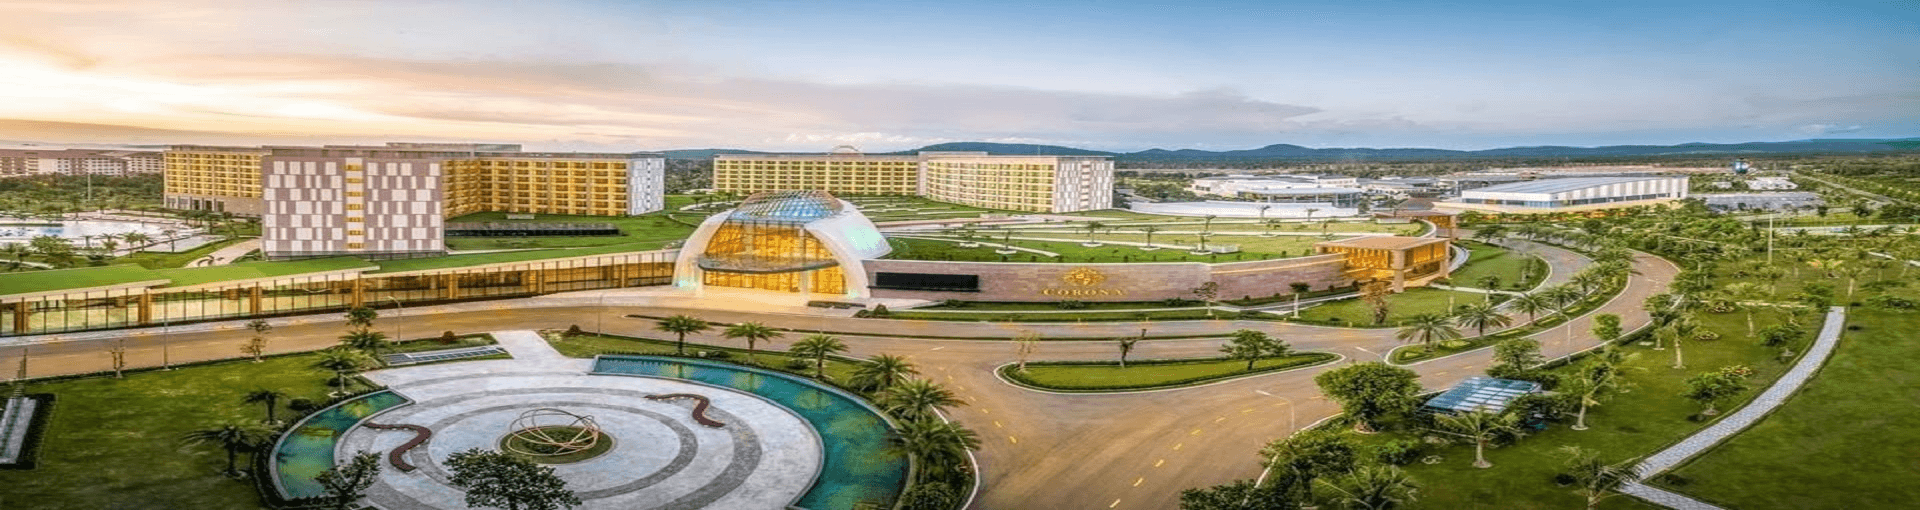 Corona Resort & Casino Phu Quoc, Vietnam